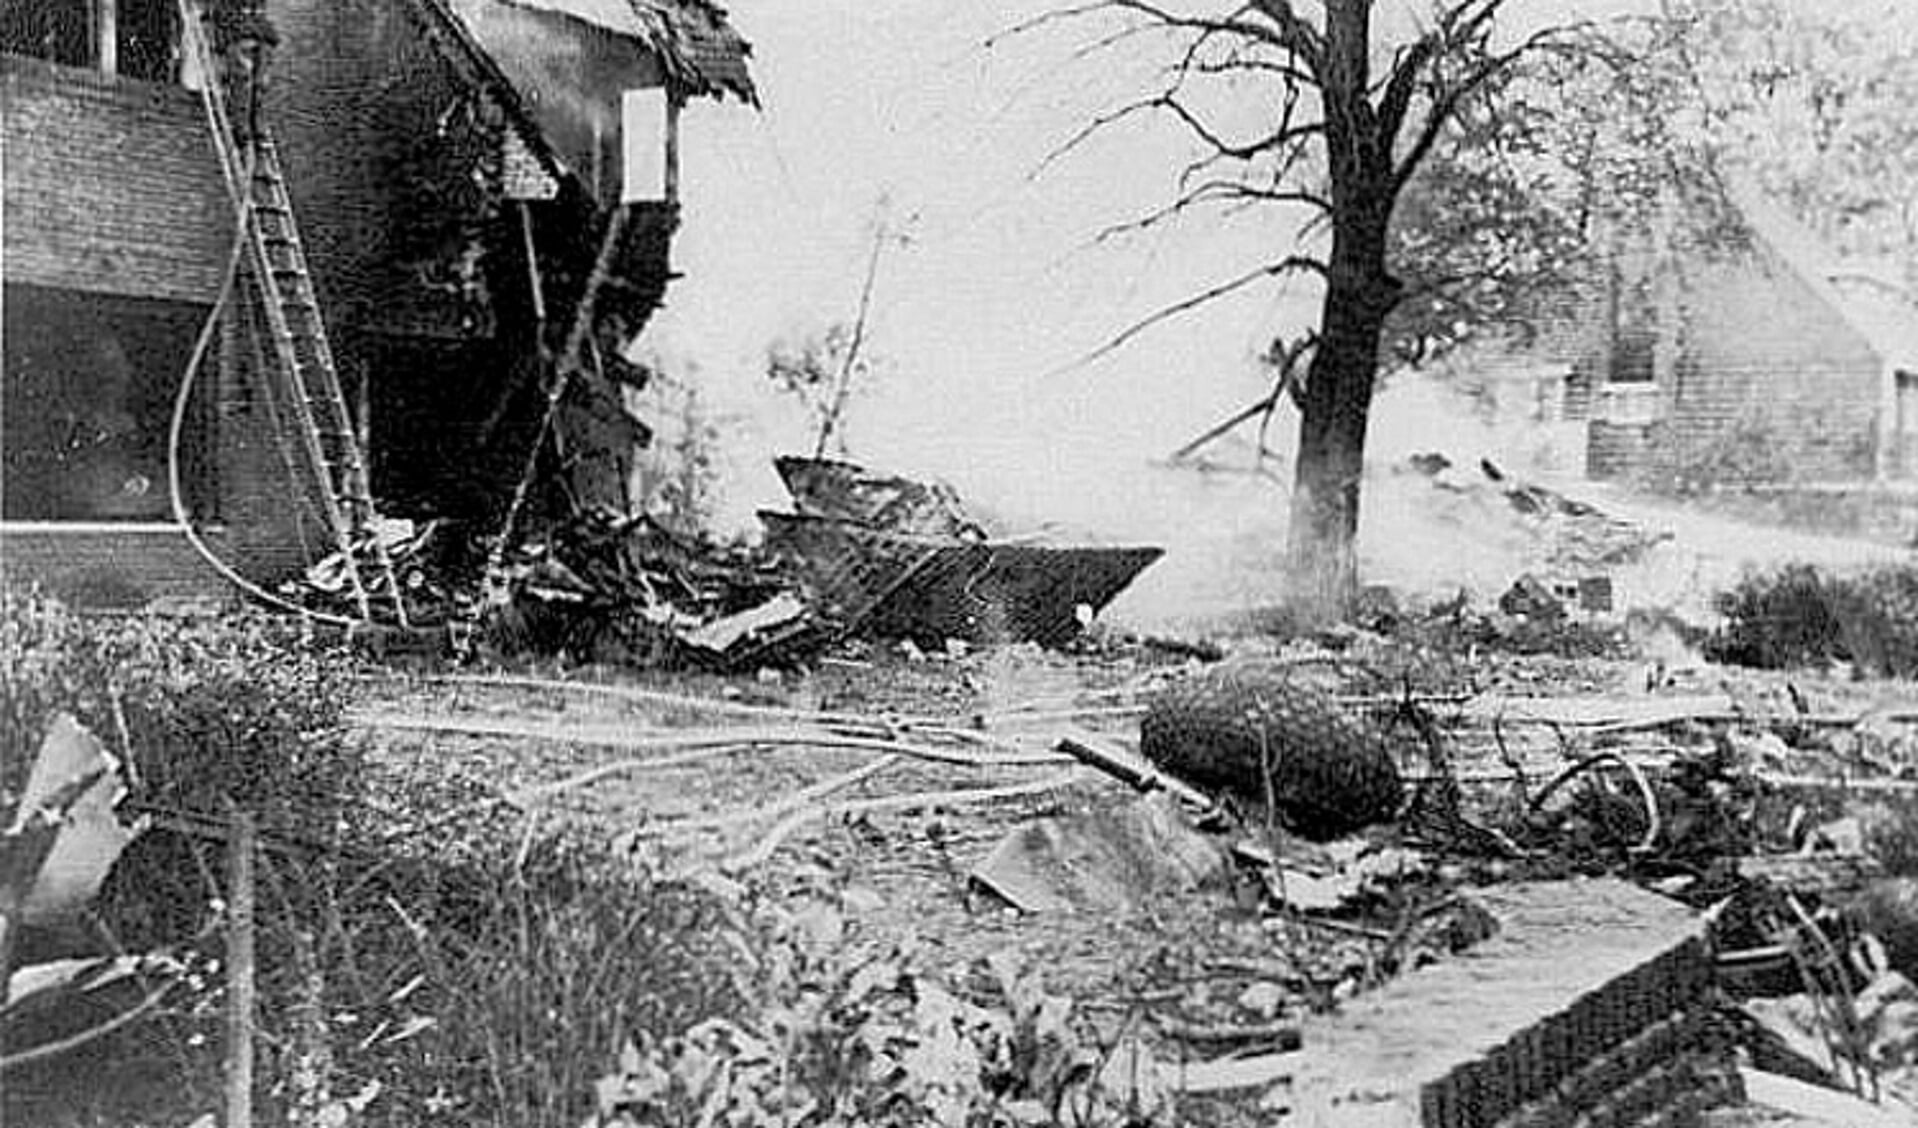 De crash in De Bilt in 1943.